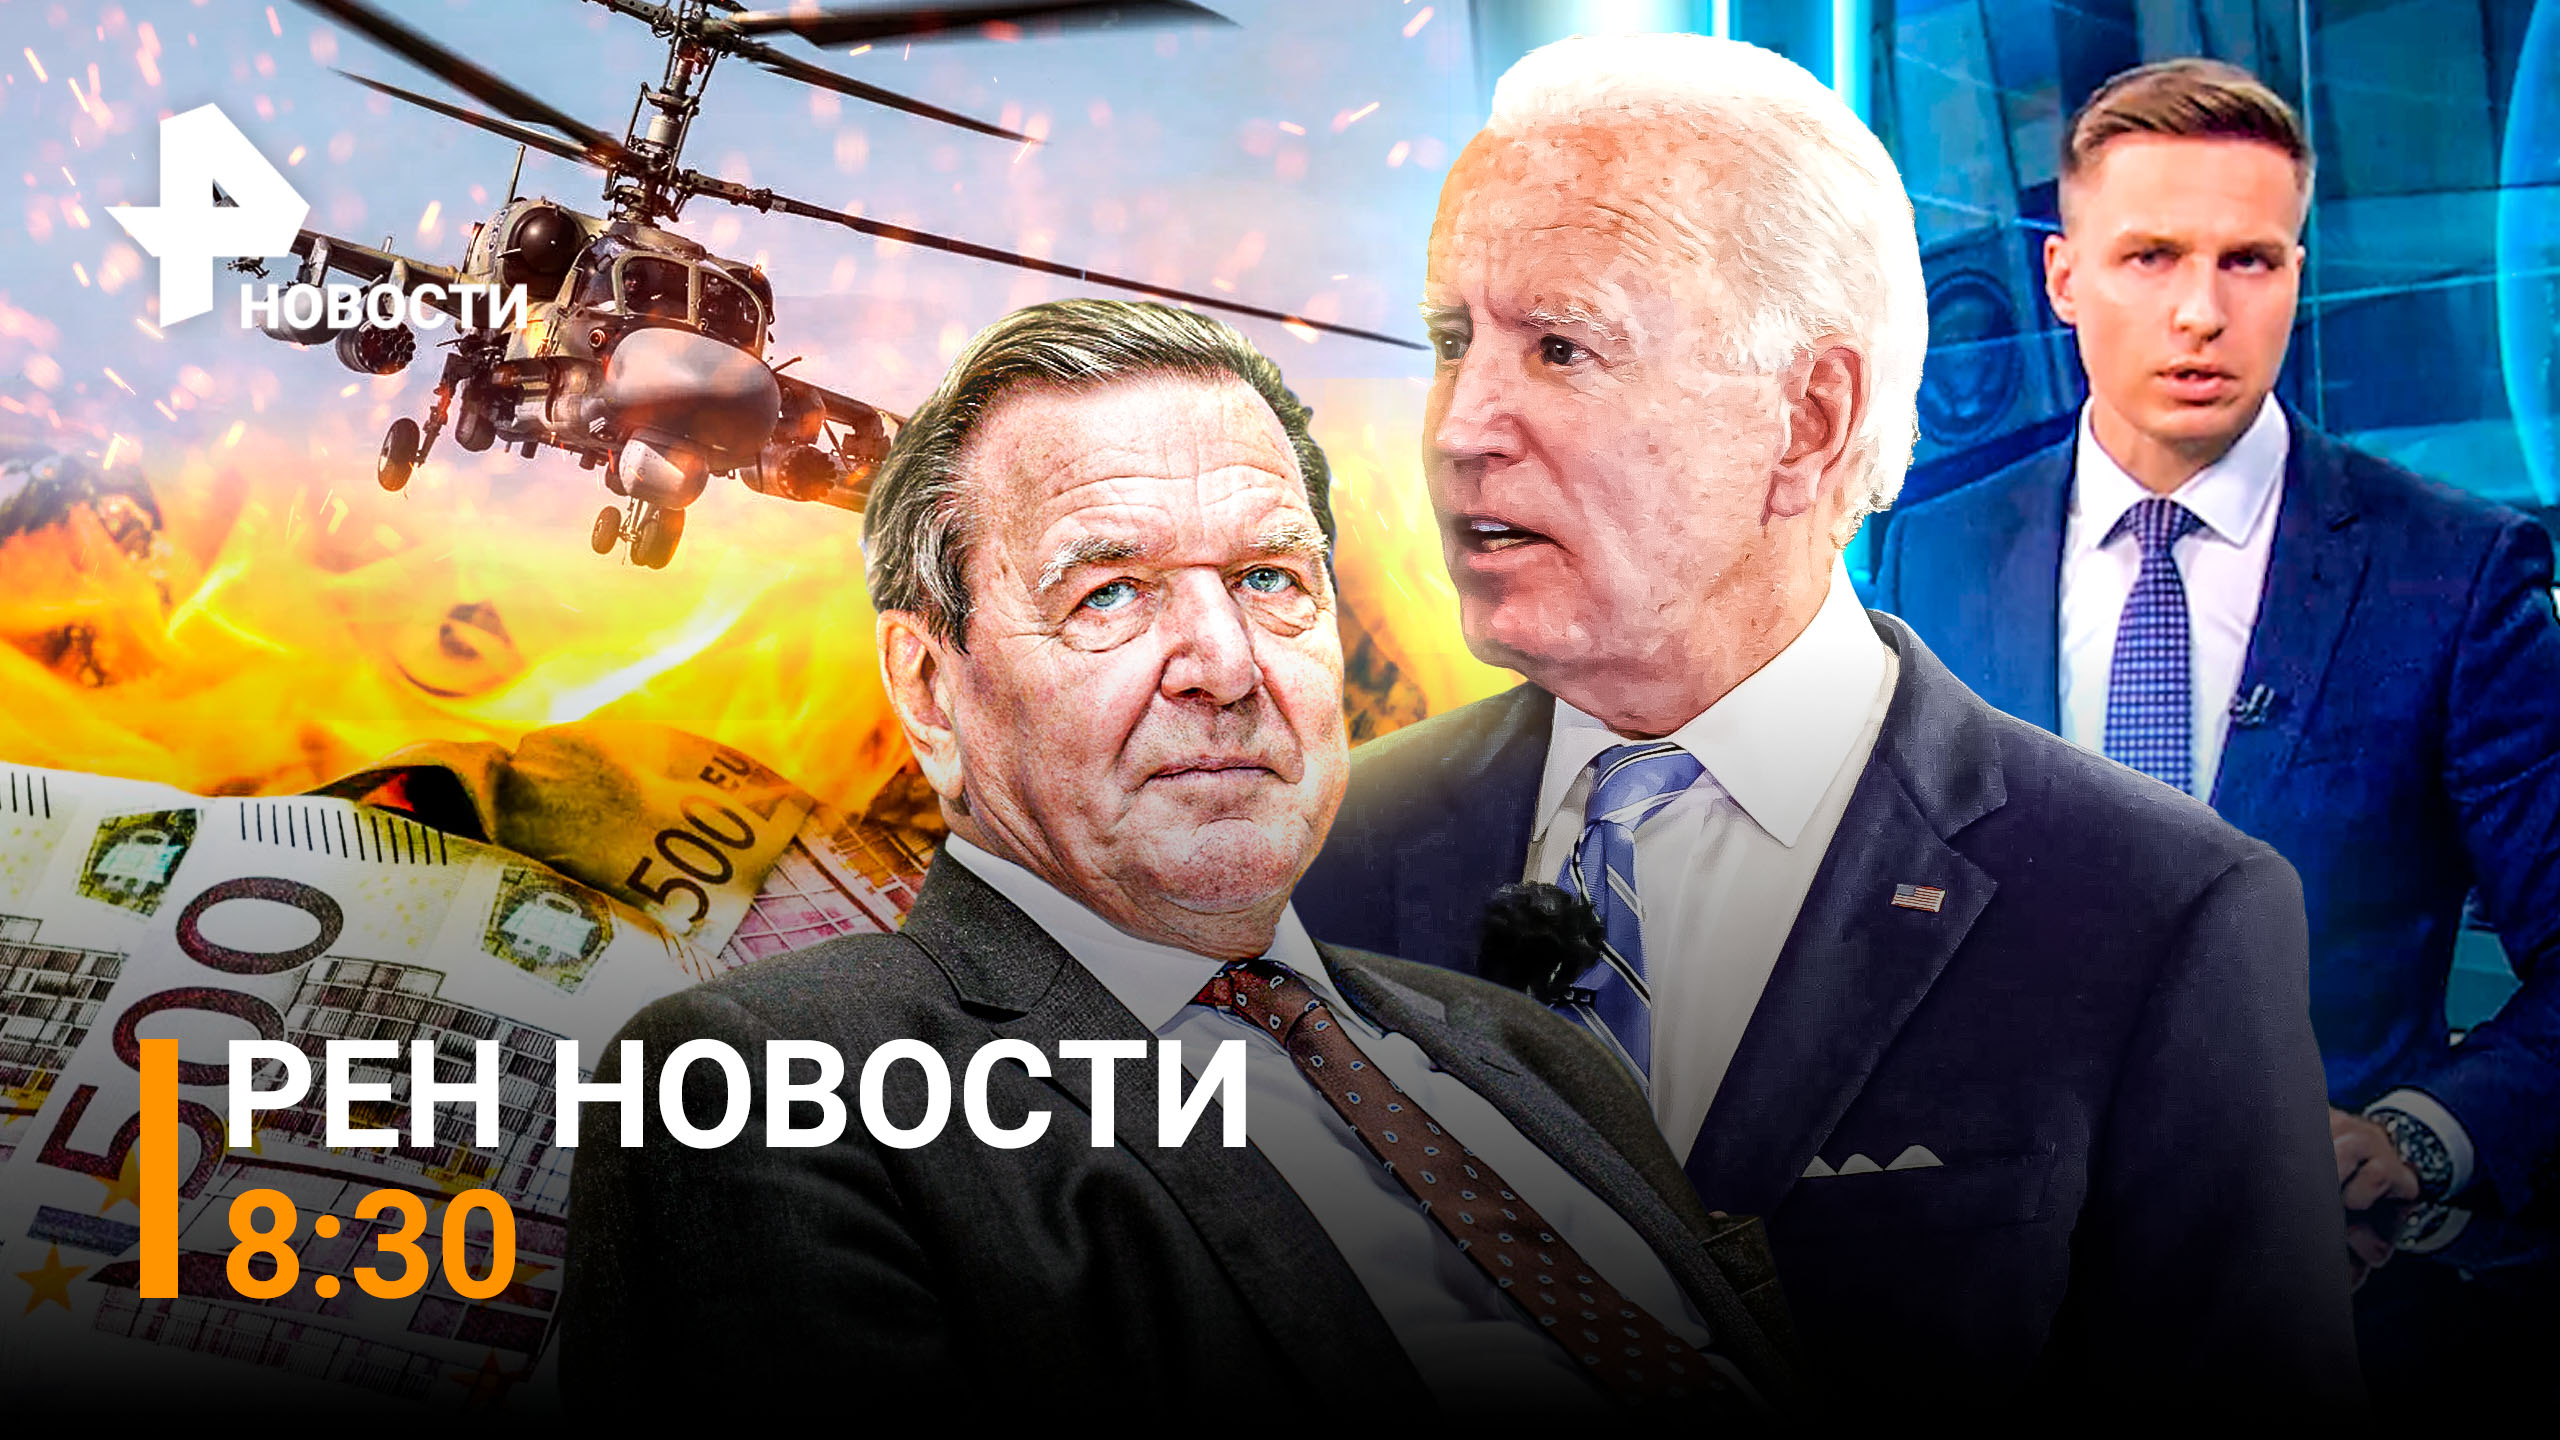 РЕН Новости 14 июля, 08:30 / Ка-52 держат воздушный периметр / Шредера исключат из партии